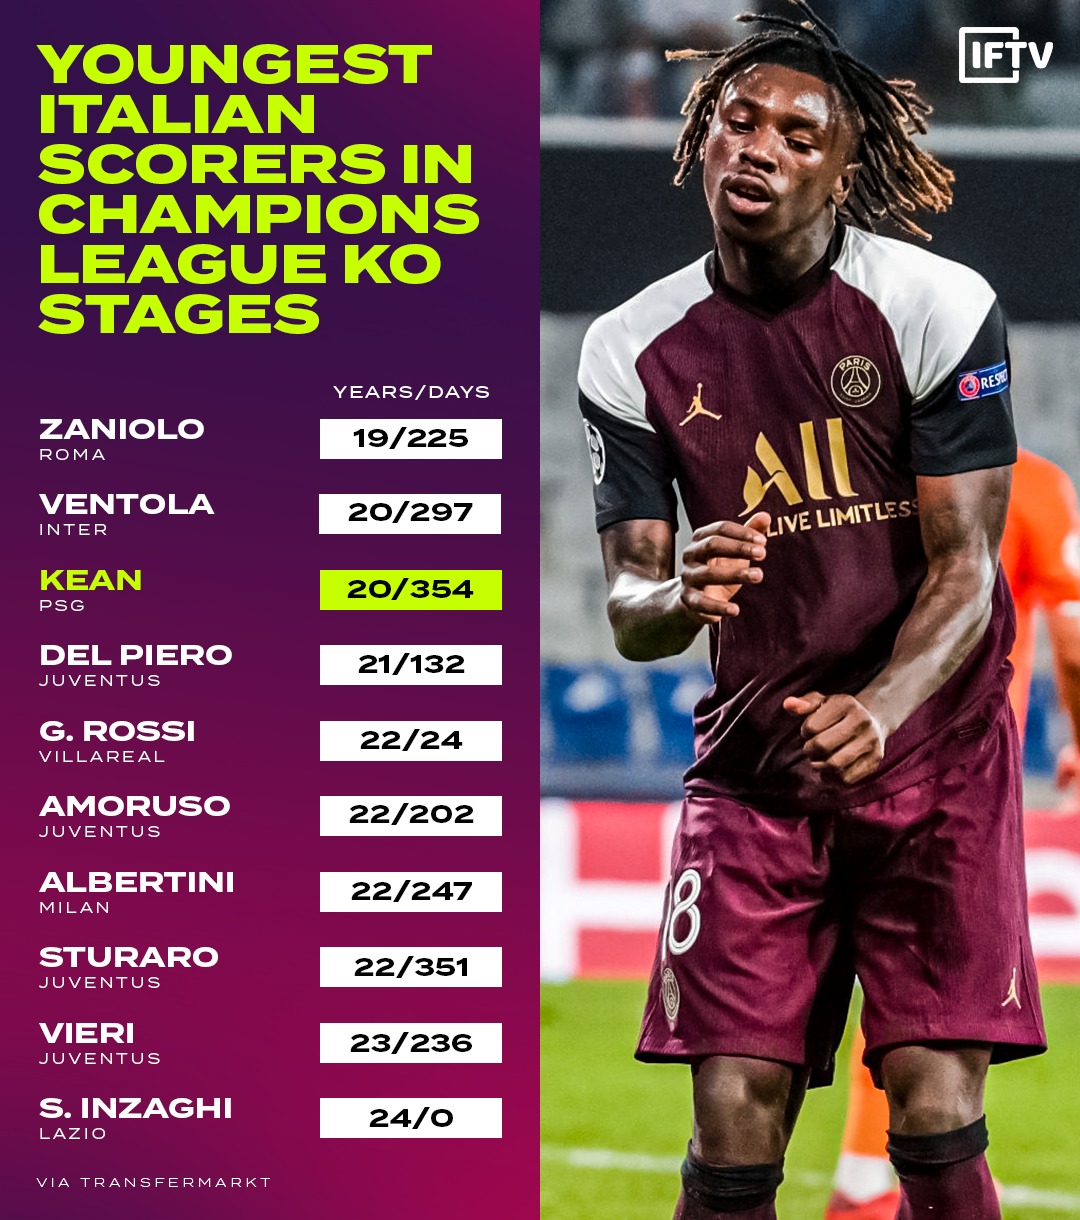 مويس كين 3 أصغر لاعب في ايطالي يسجل في مراحل خروج المغلوب في الدوريات الأوروبية